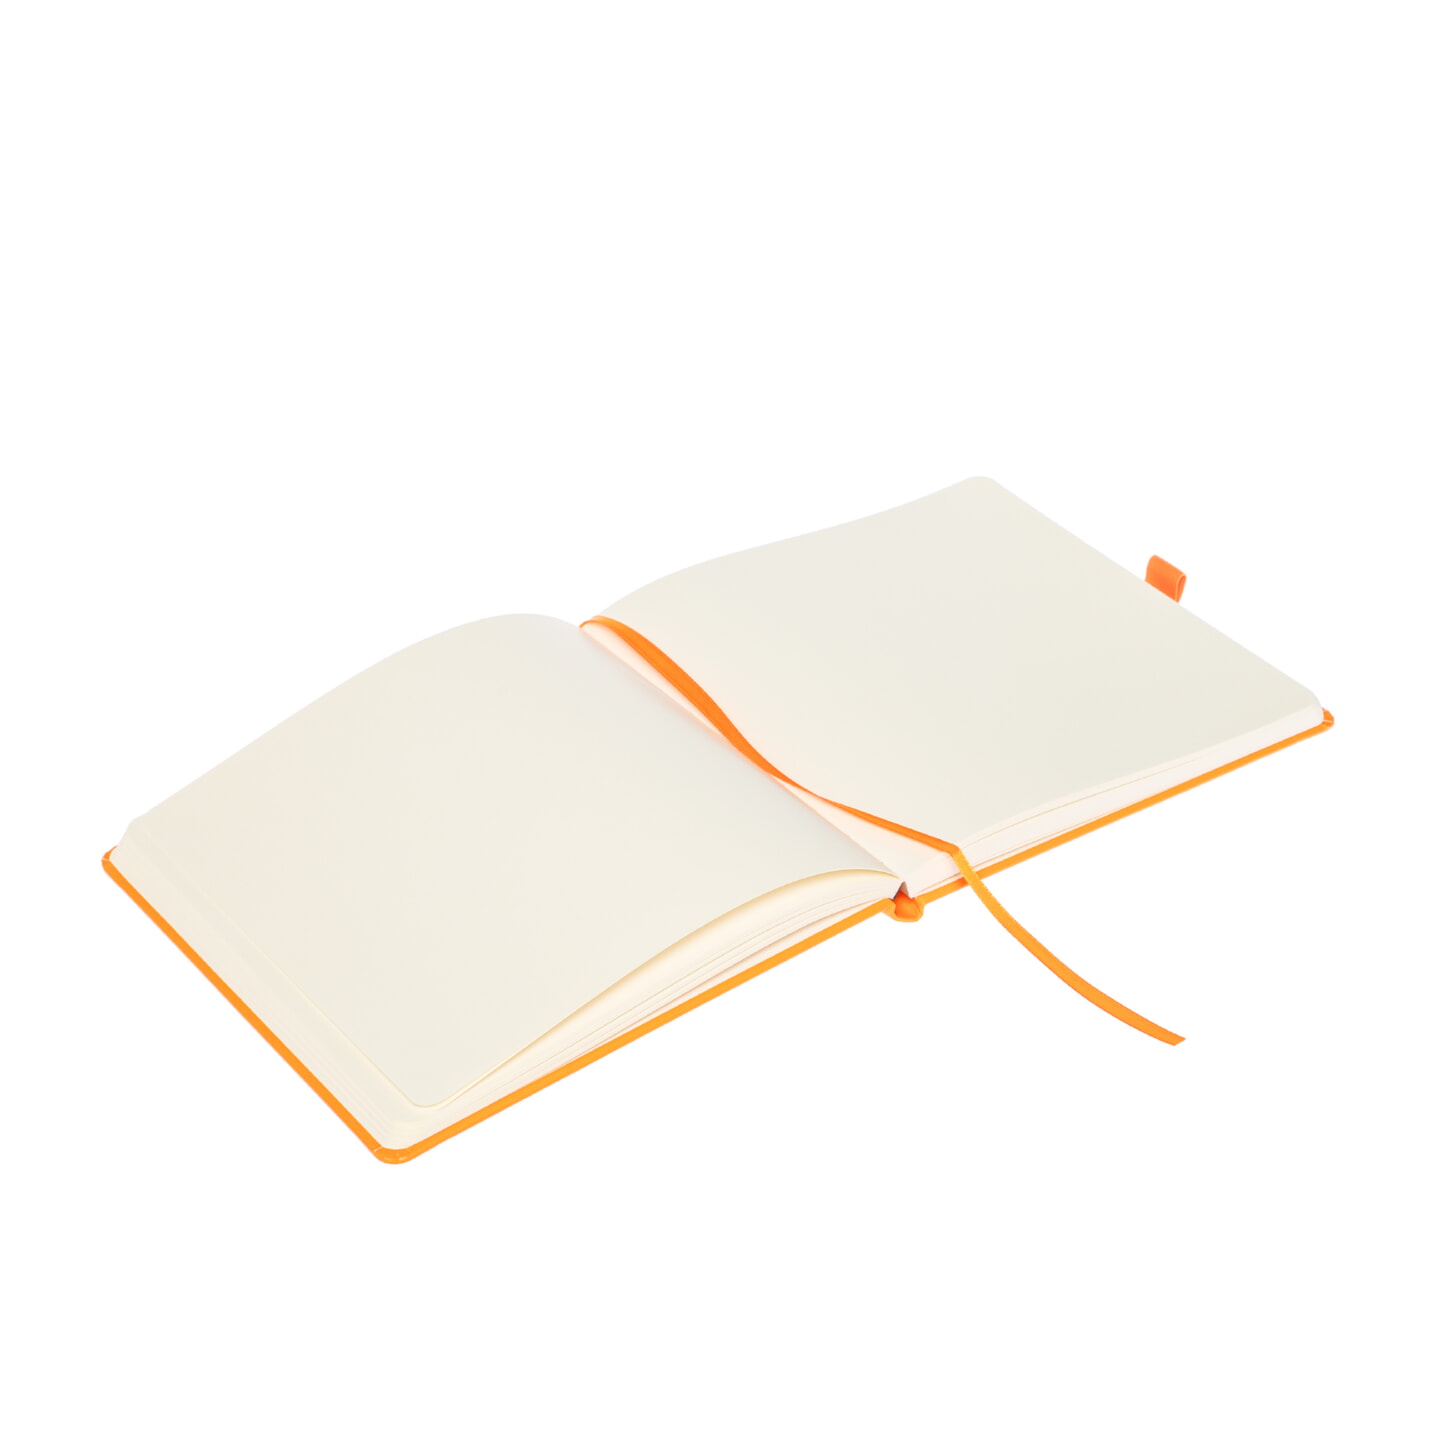 Блокнот для зарисовок Sketchmarker 140г/кв.м 20*20cм 80л твердая обложка Неоновый апельсин